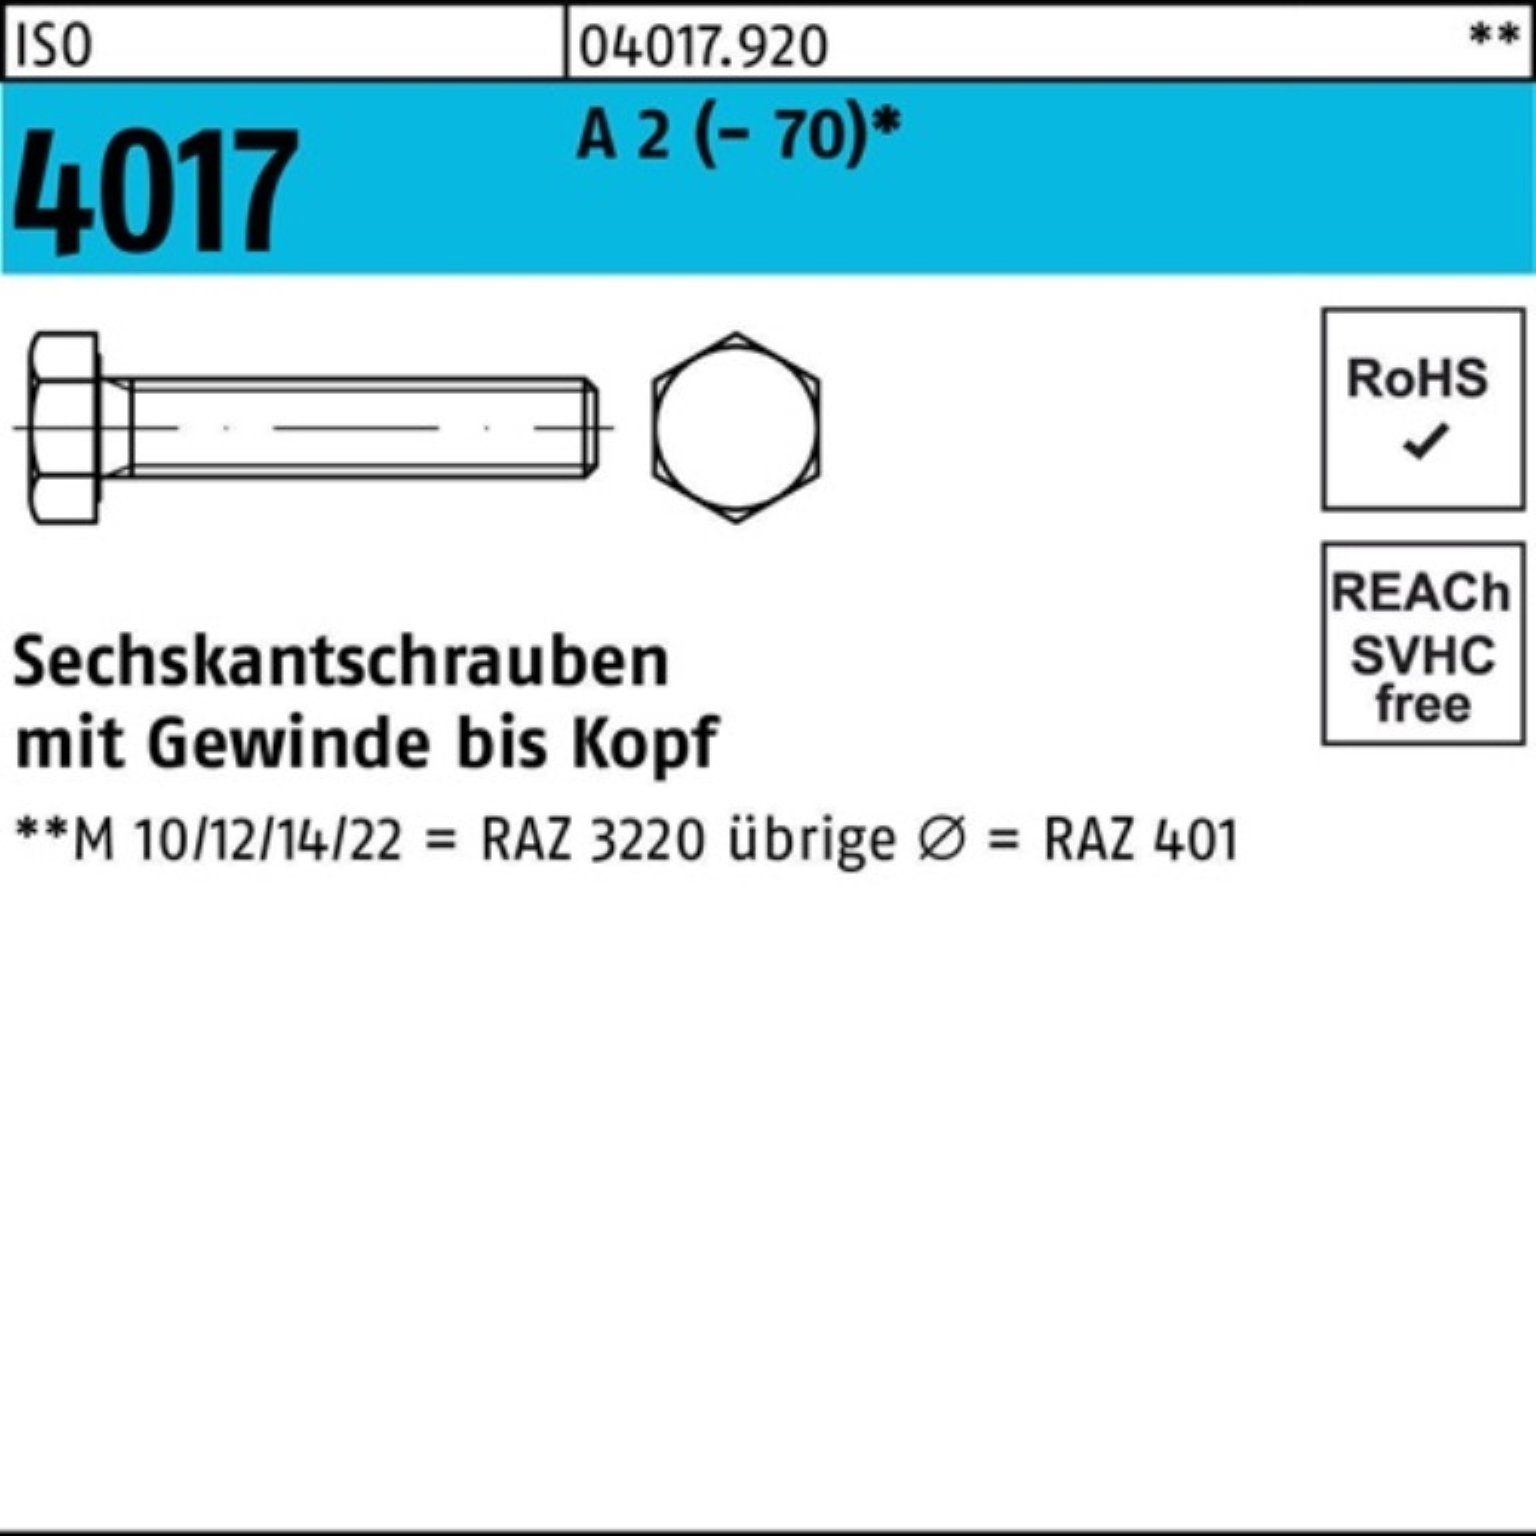 Bufab Sechskantschraube 200er Pack Sechskantschraube ISO 4017 VG M8x 10 A 2 (70) 200 Stück